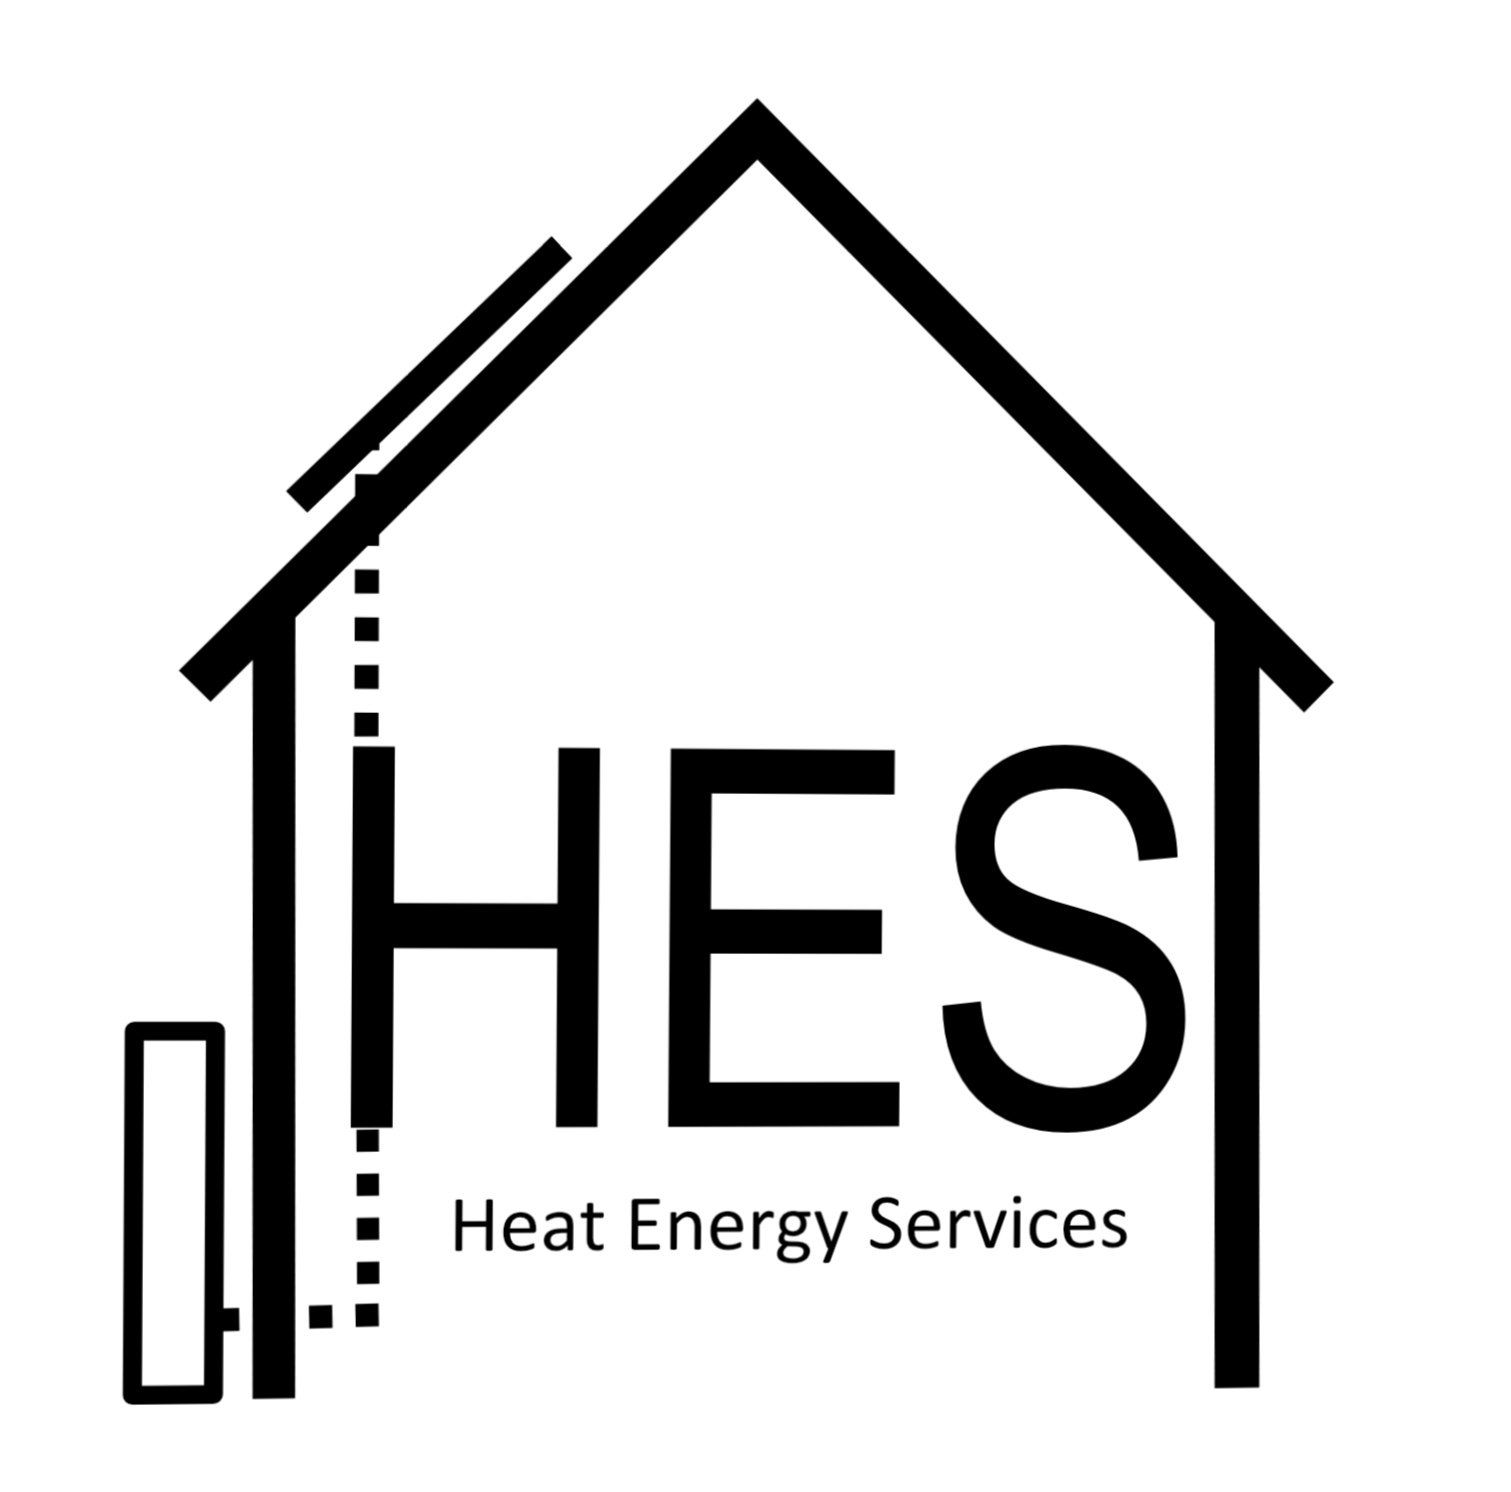 Heat Energy Services